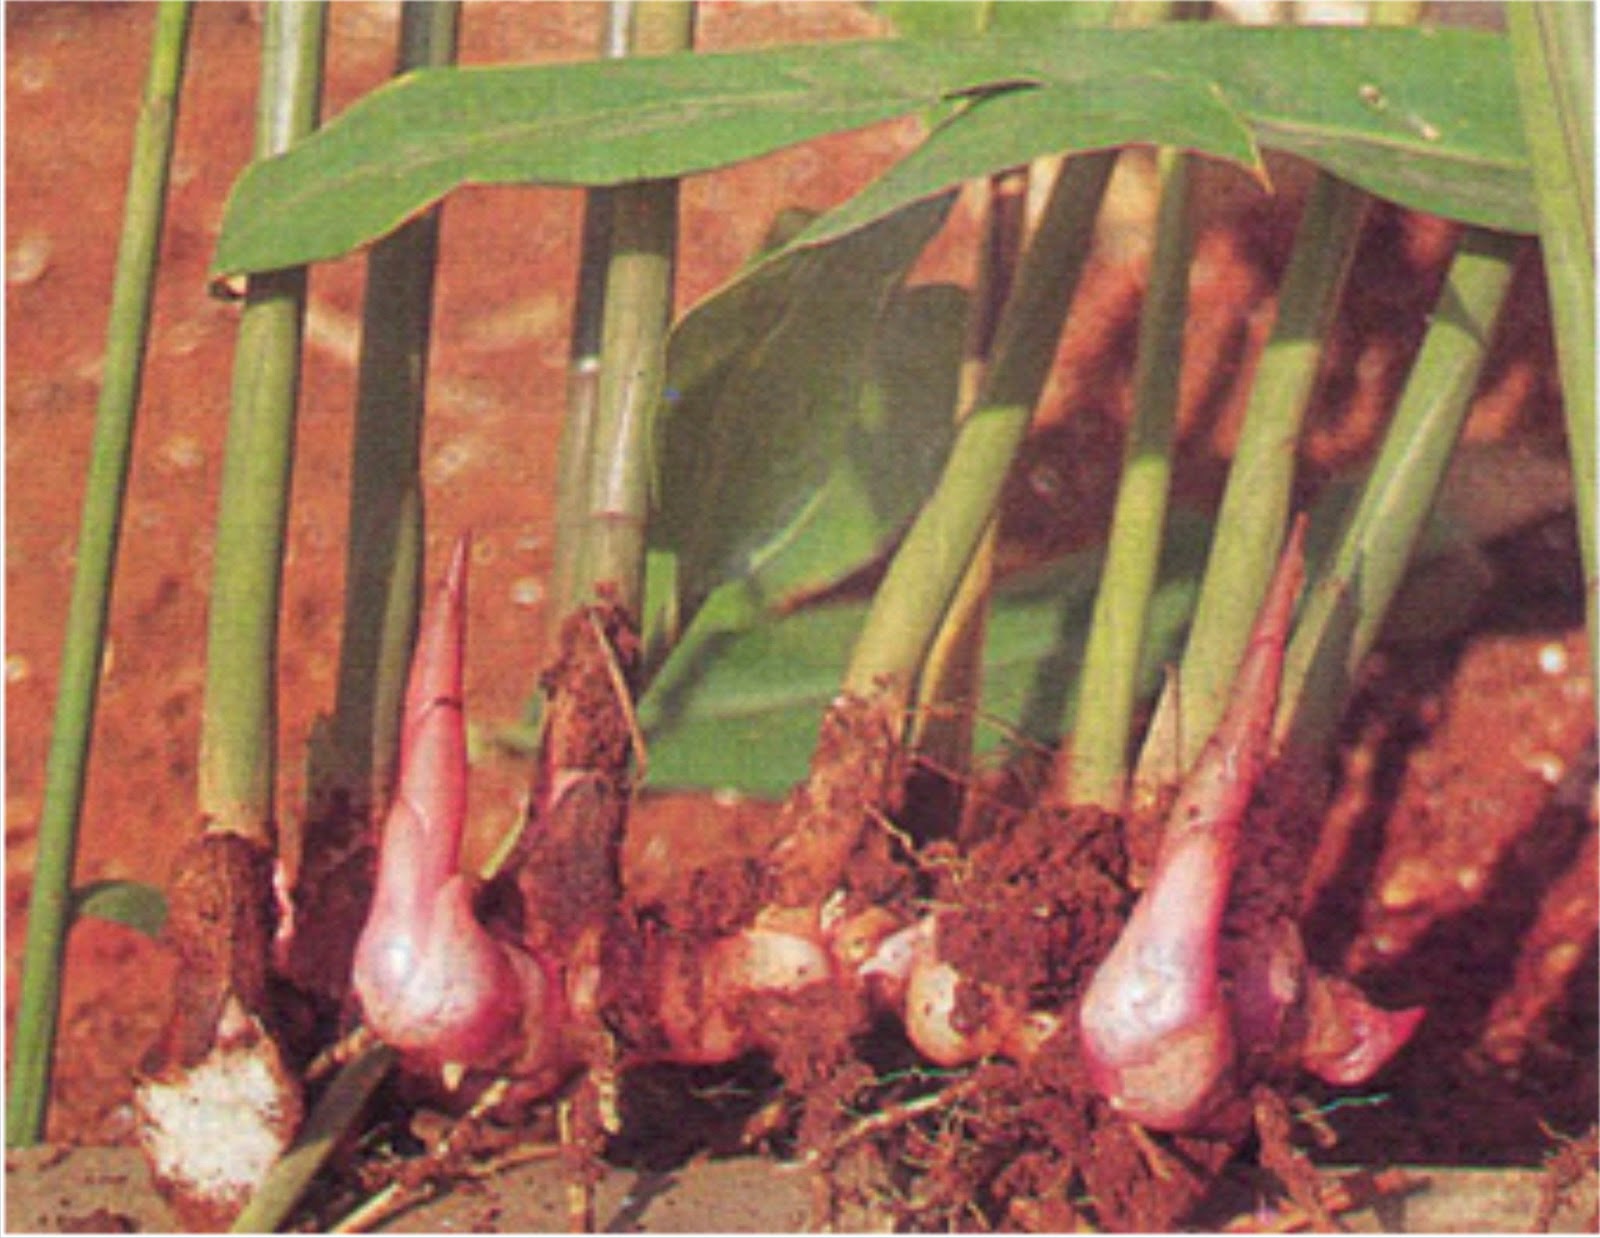  Tanaman ini di kenal juga dengan nama Laos yaitu tumbuhan jenis umbi Manfaat Lengkuas Merah Untuk Kesehatan